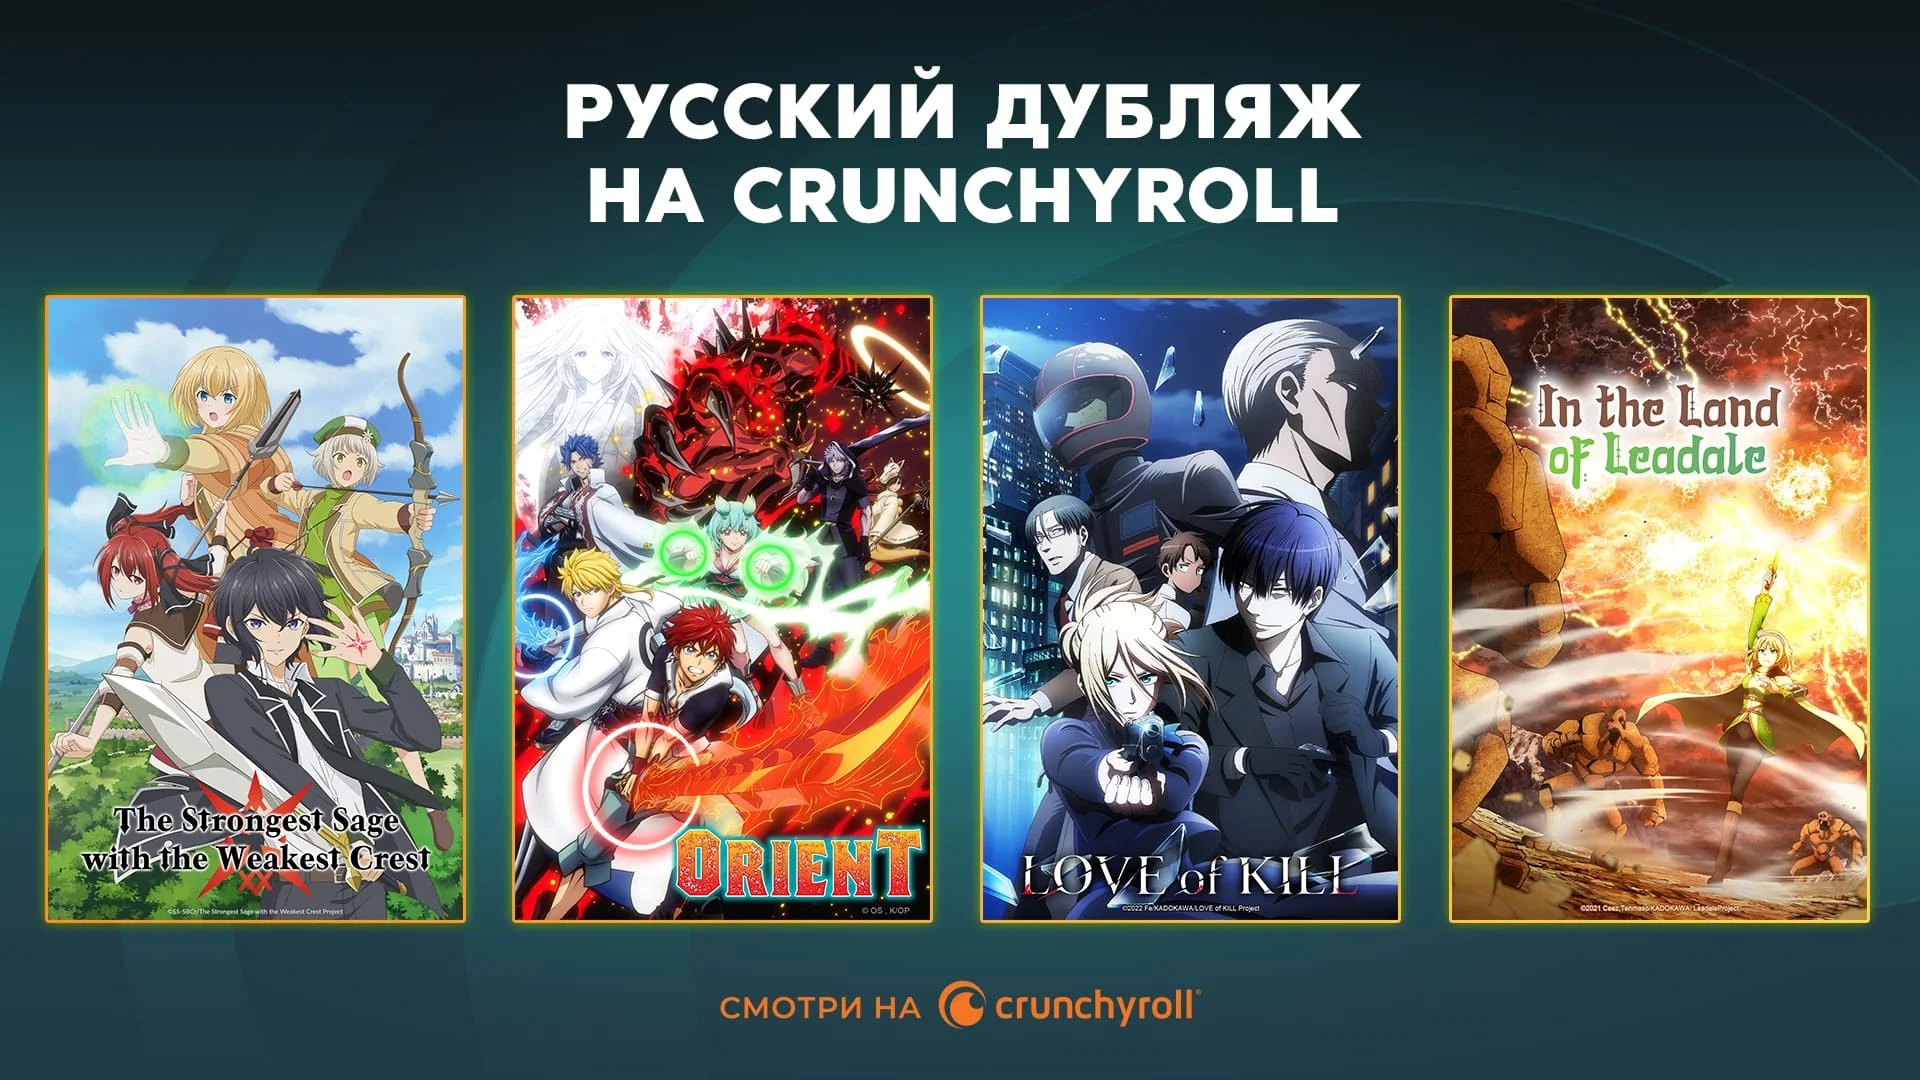 Постеры сериалов, доступных в русском дубляже. Источник: Crunchyroll